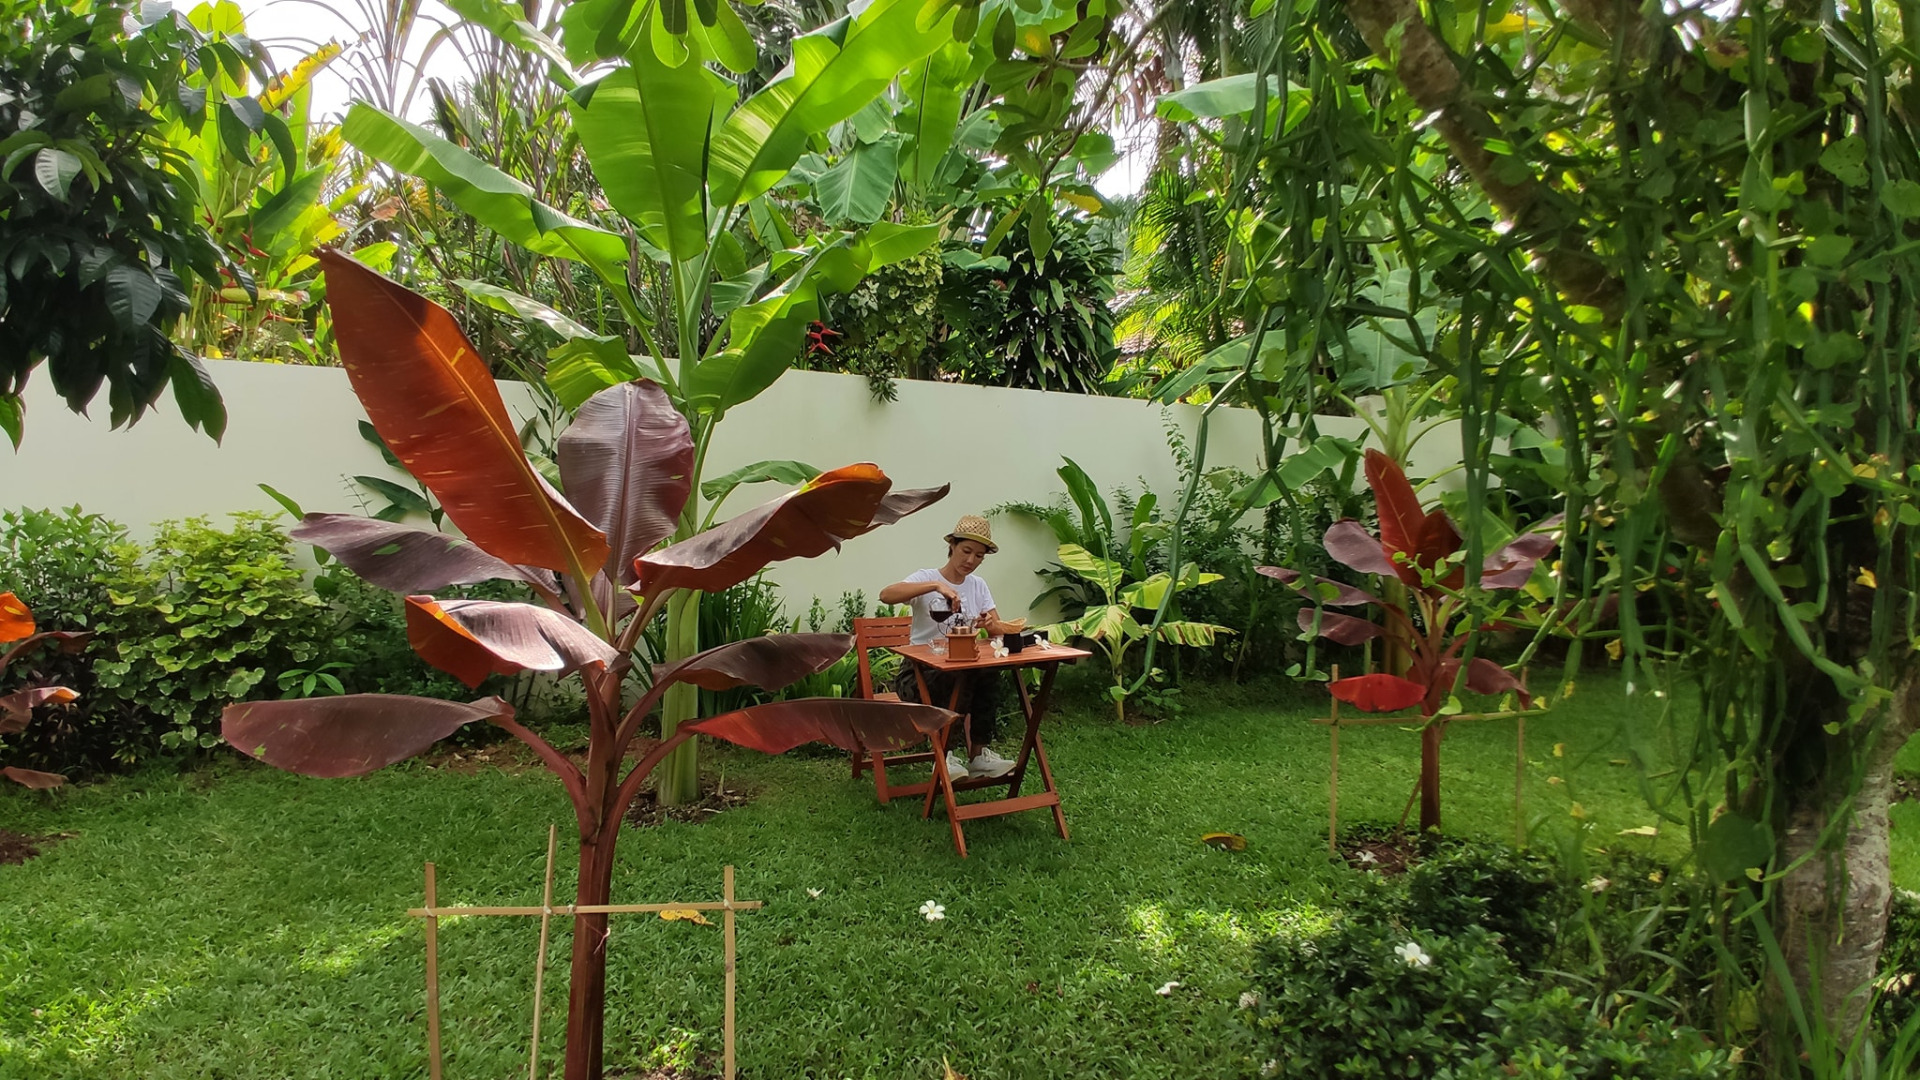 สาวโพสต์ภาพนั่งดริปกาแฟในสวน "กล้วยด่าง" แบบนี้เรียกว่าสวย และรวยมาก